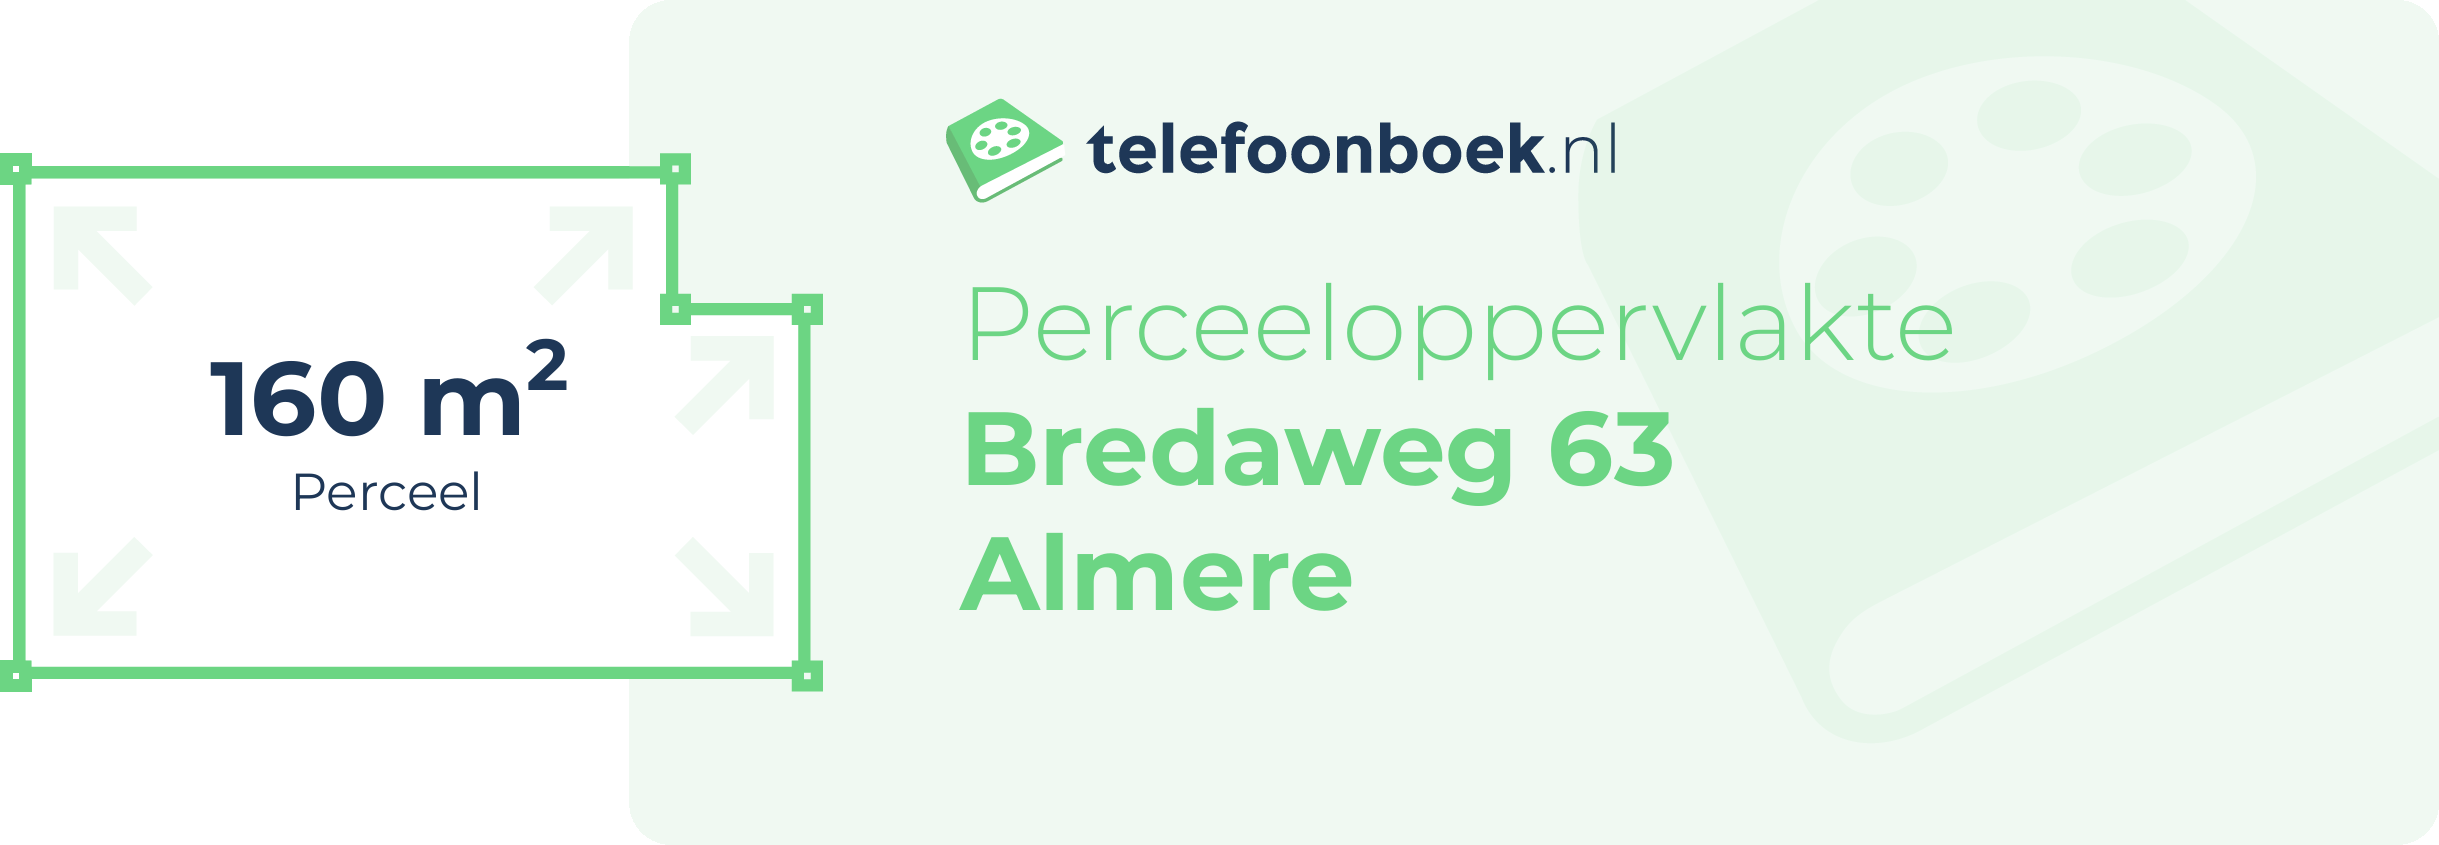 Perceeloppervlakte Bredaweg 63 Almere